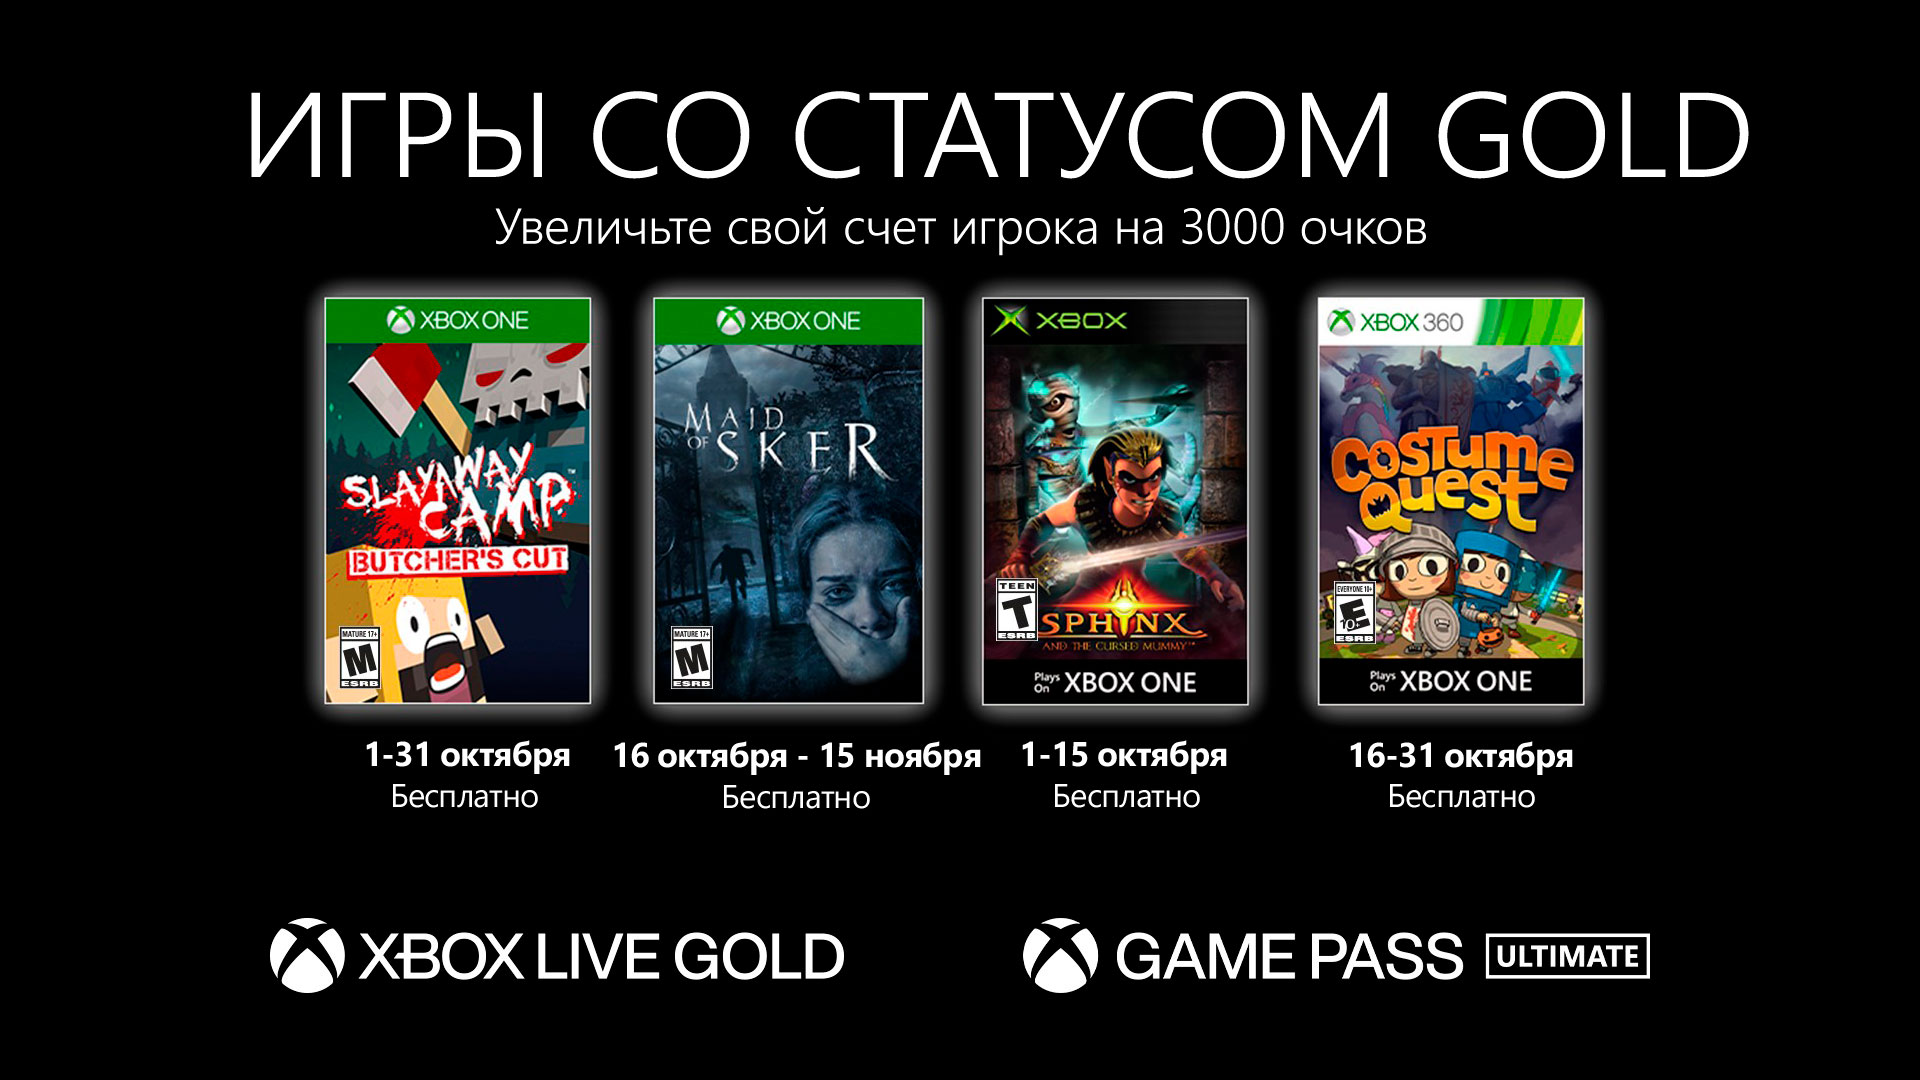 Video For Бесплатные игры для подписчиков Xbox Live Gold в октябре